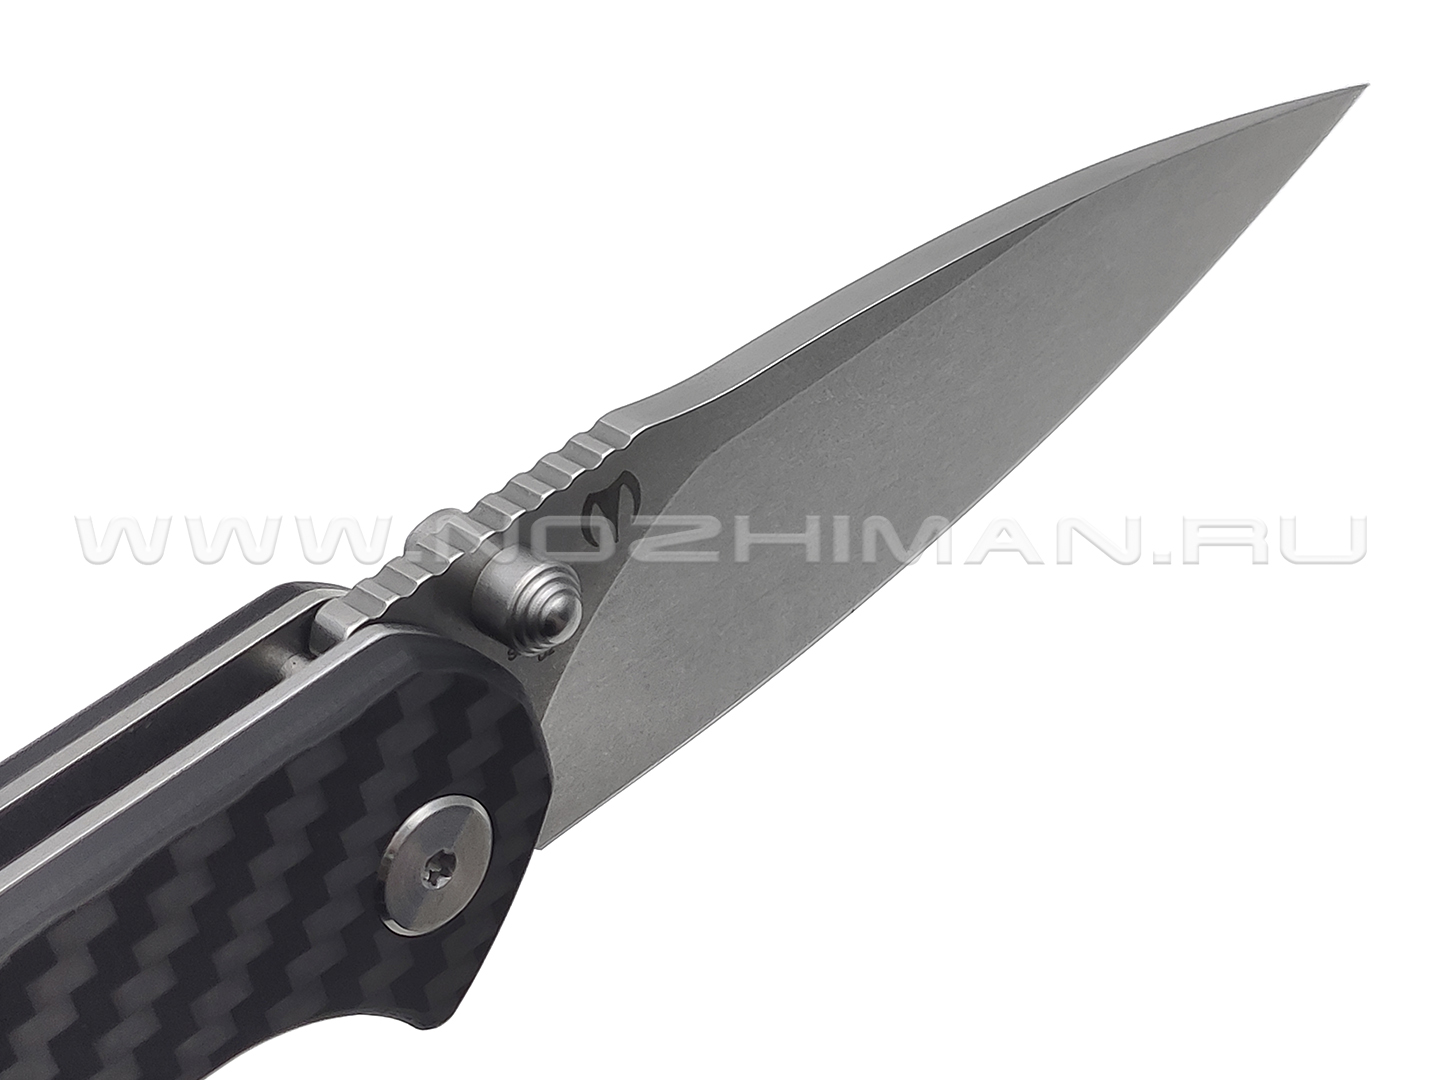 Нож CJRB Centros J1905-CF сталь D2, рукоять Carbon fiber